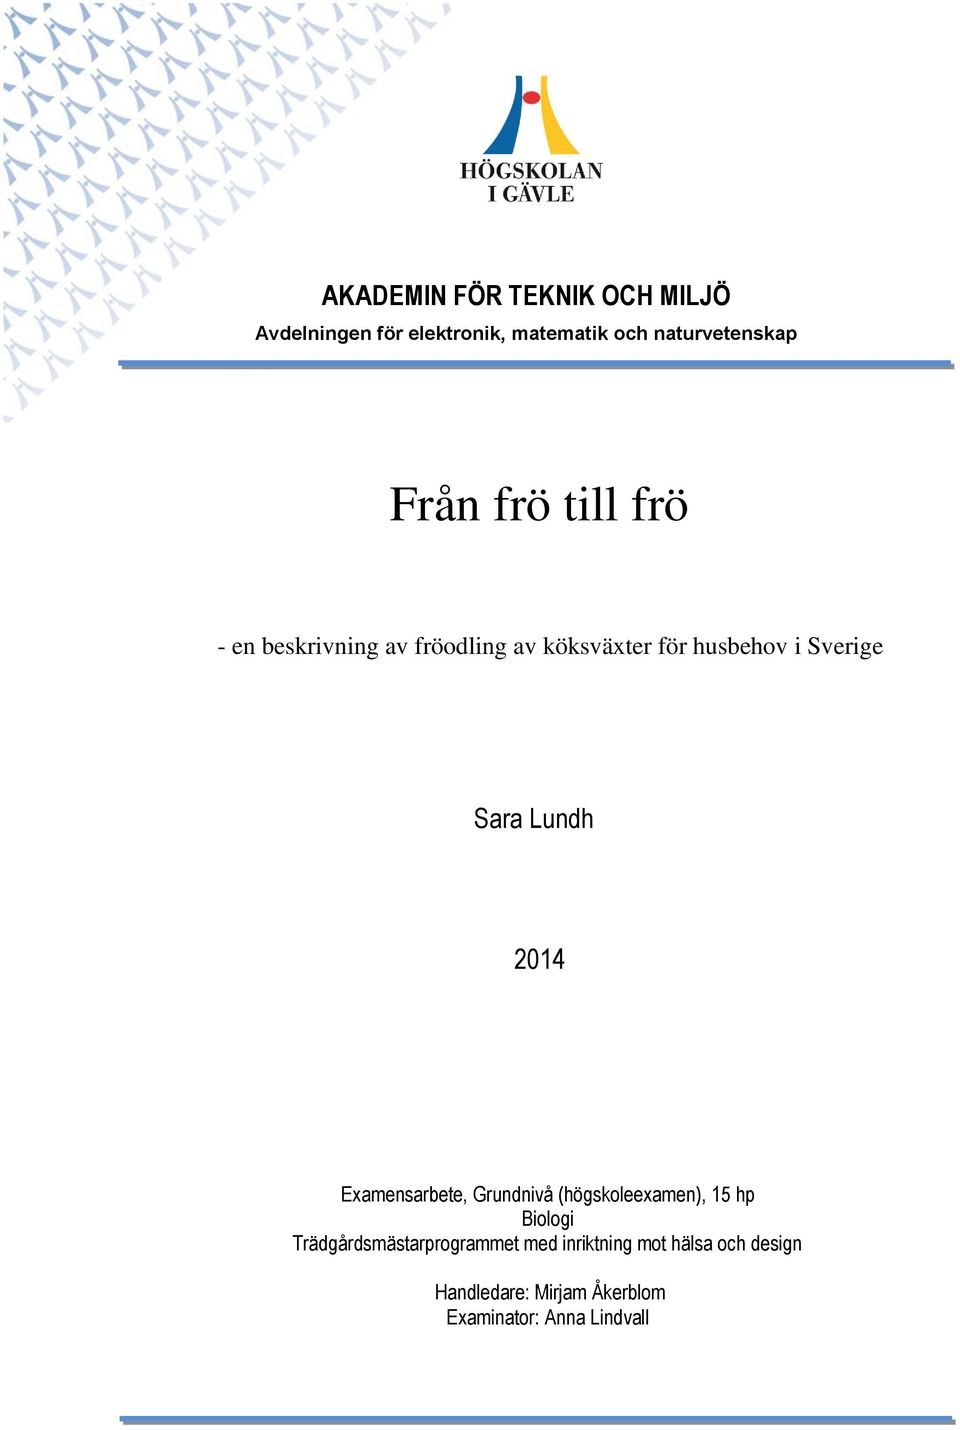 Lundh 2014 Examensarbete, Grundnivå (högskoleexamen), 15 hp Biologi